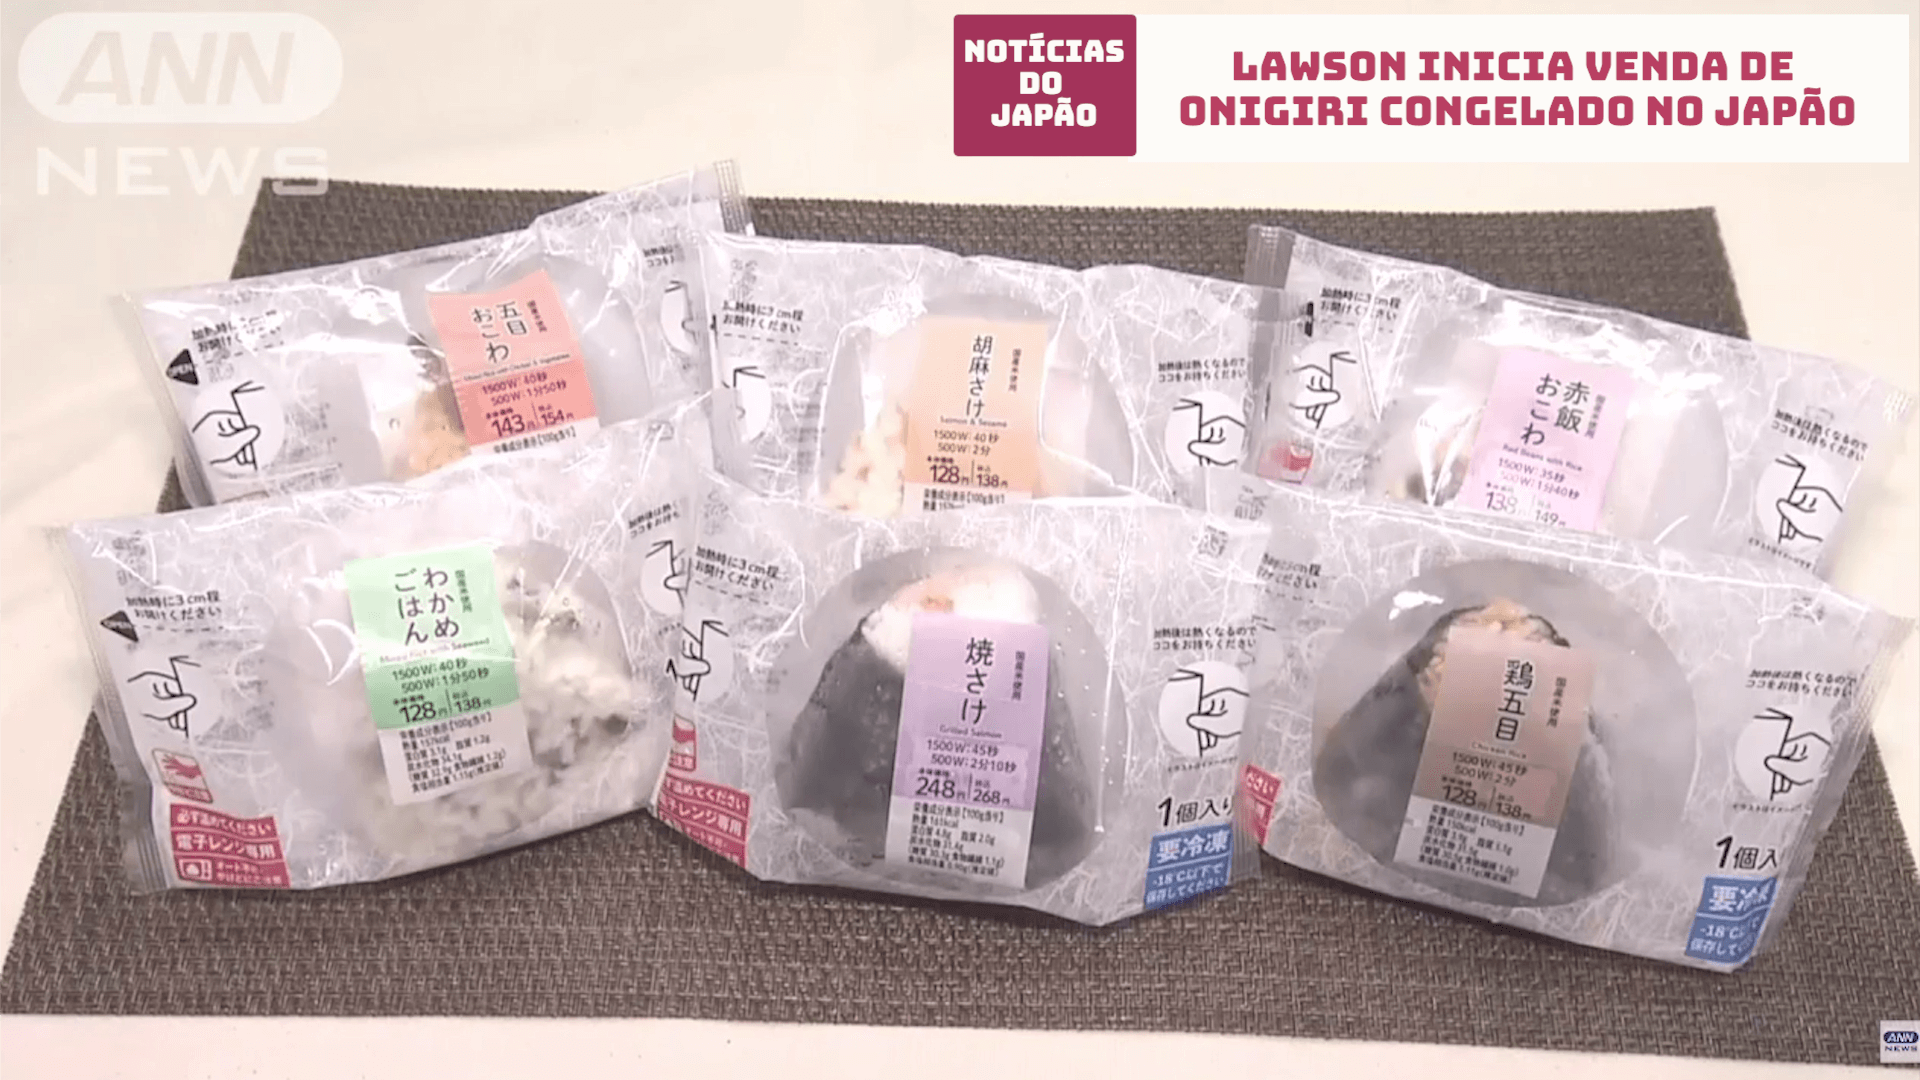 Lawson inicia venda de onigiri congelado no Japão 